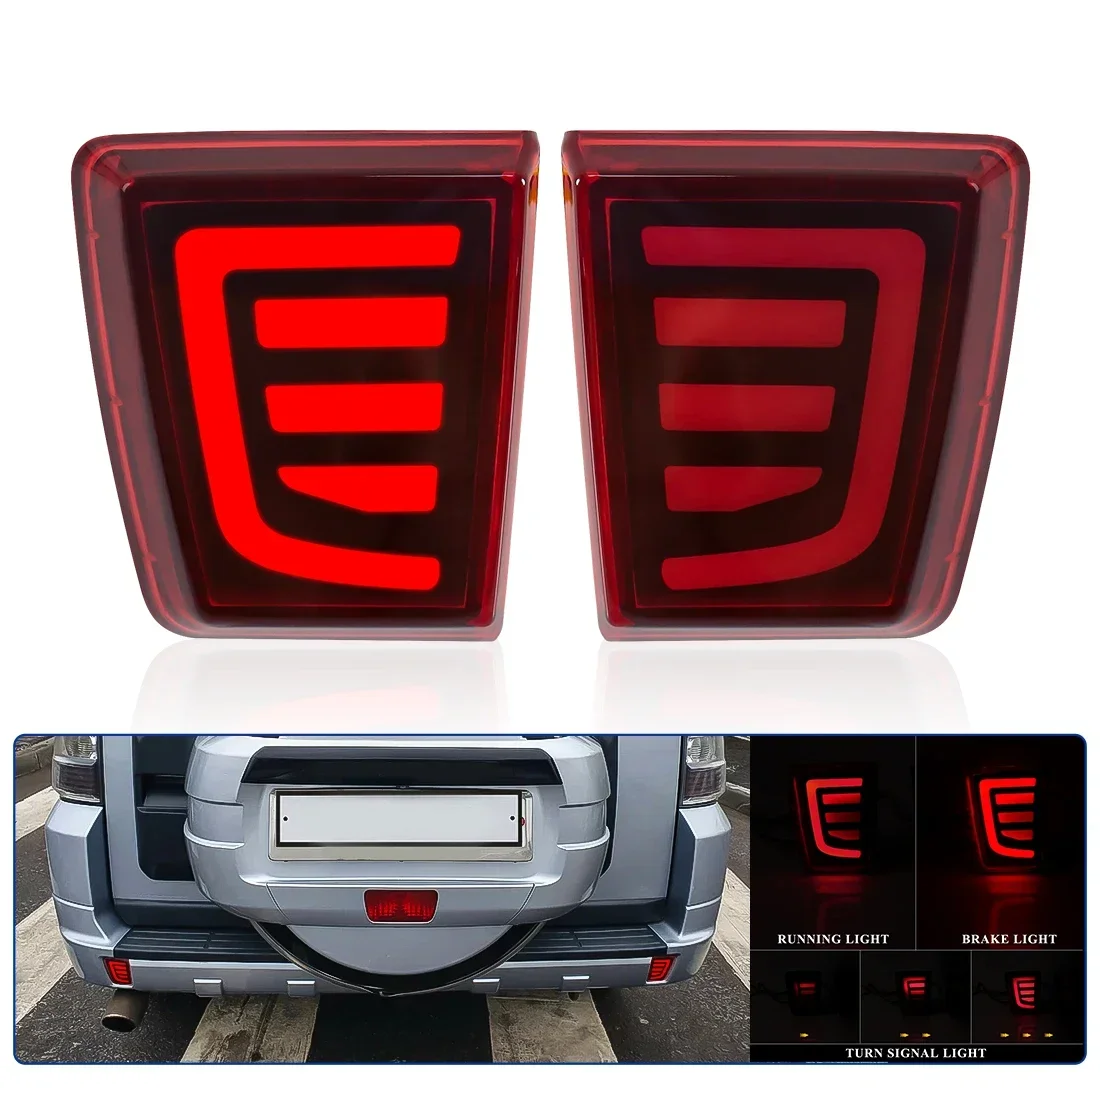 

For Mitsubishi Pajero Shogun V97 V98 V87 V93 V95 Montero 2007 - 2020 LED Car Rear Bumper Reflector Tail Brake Turn Signal Light